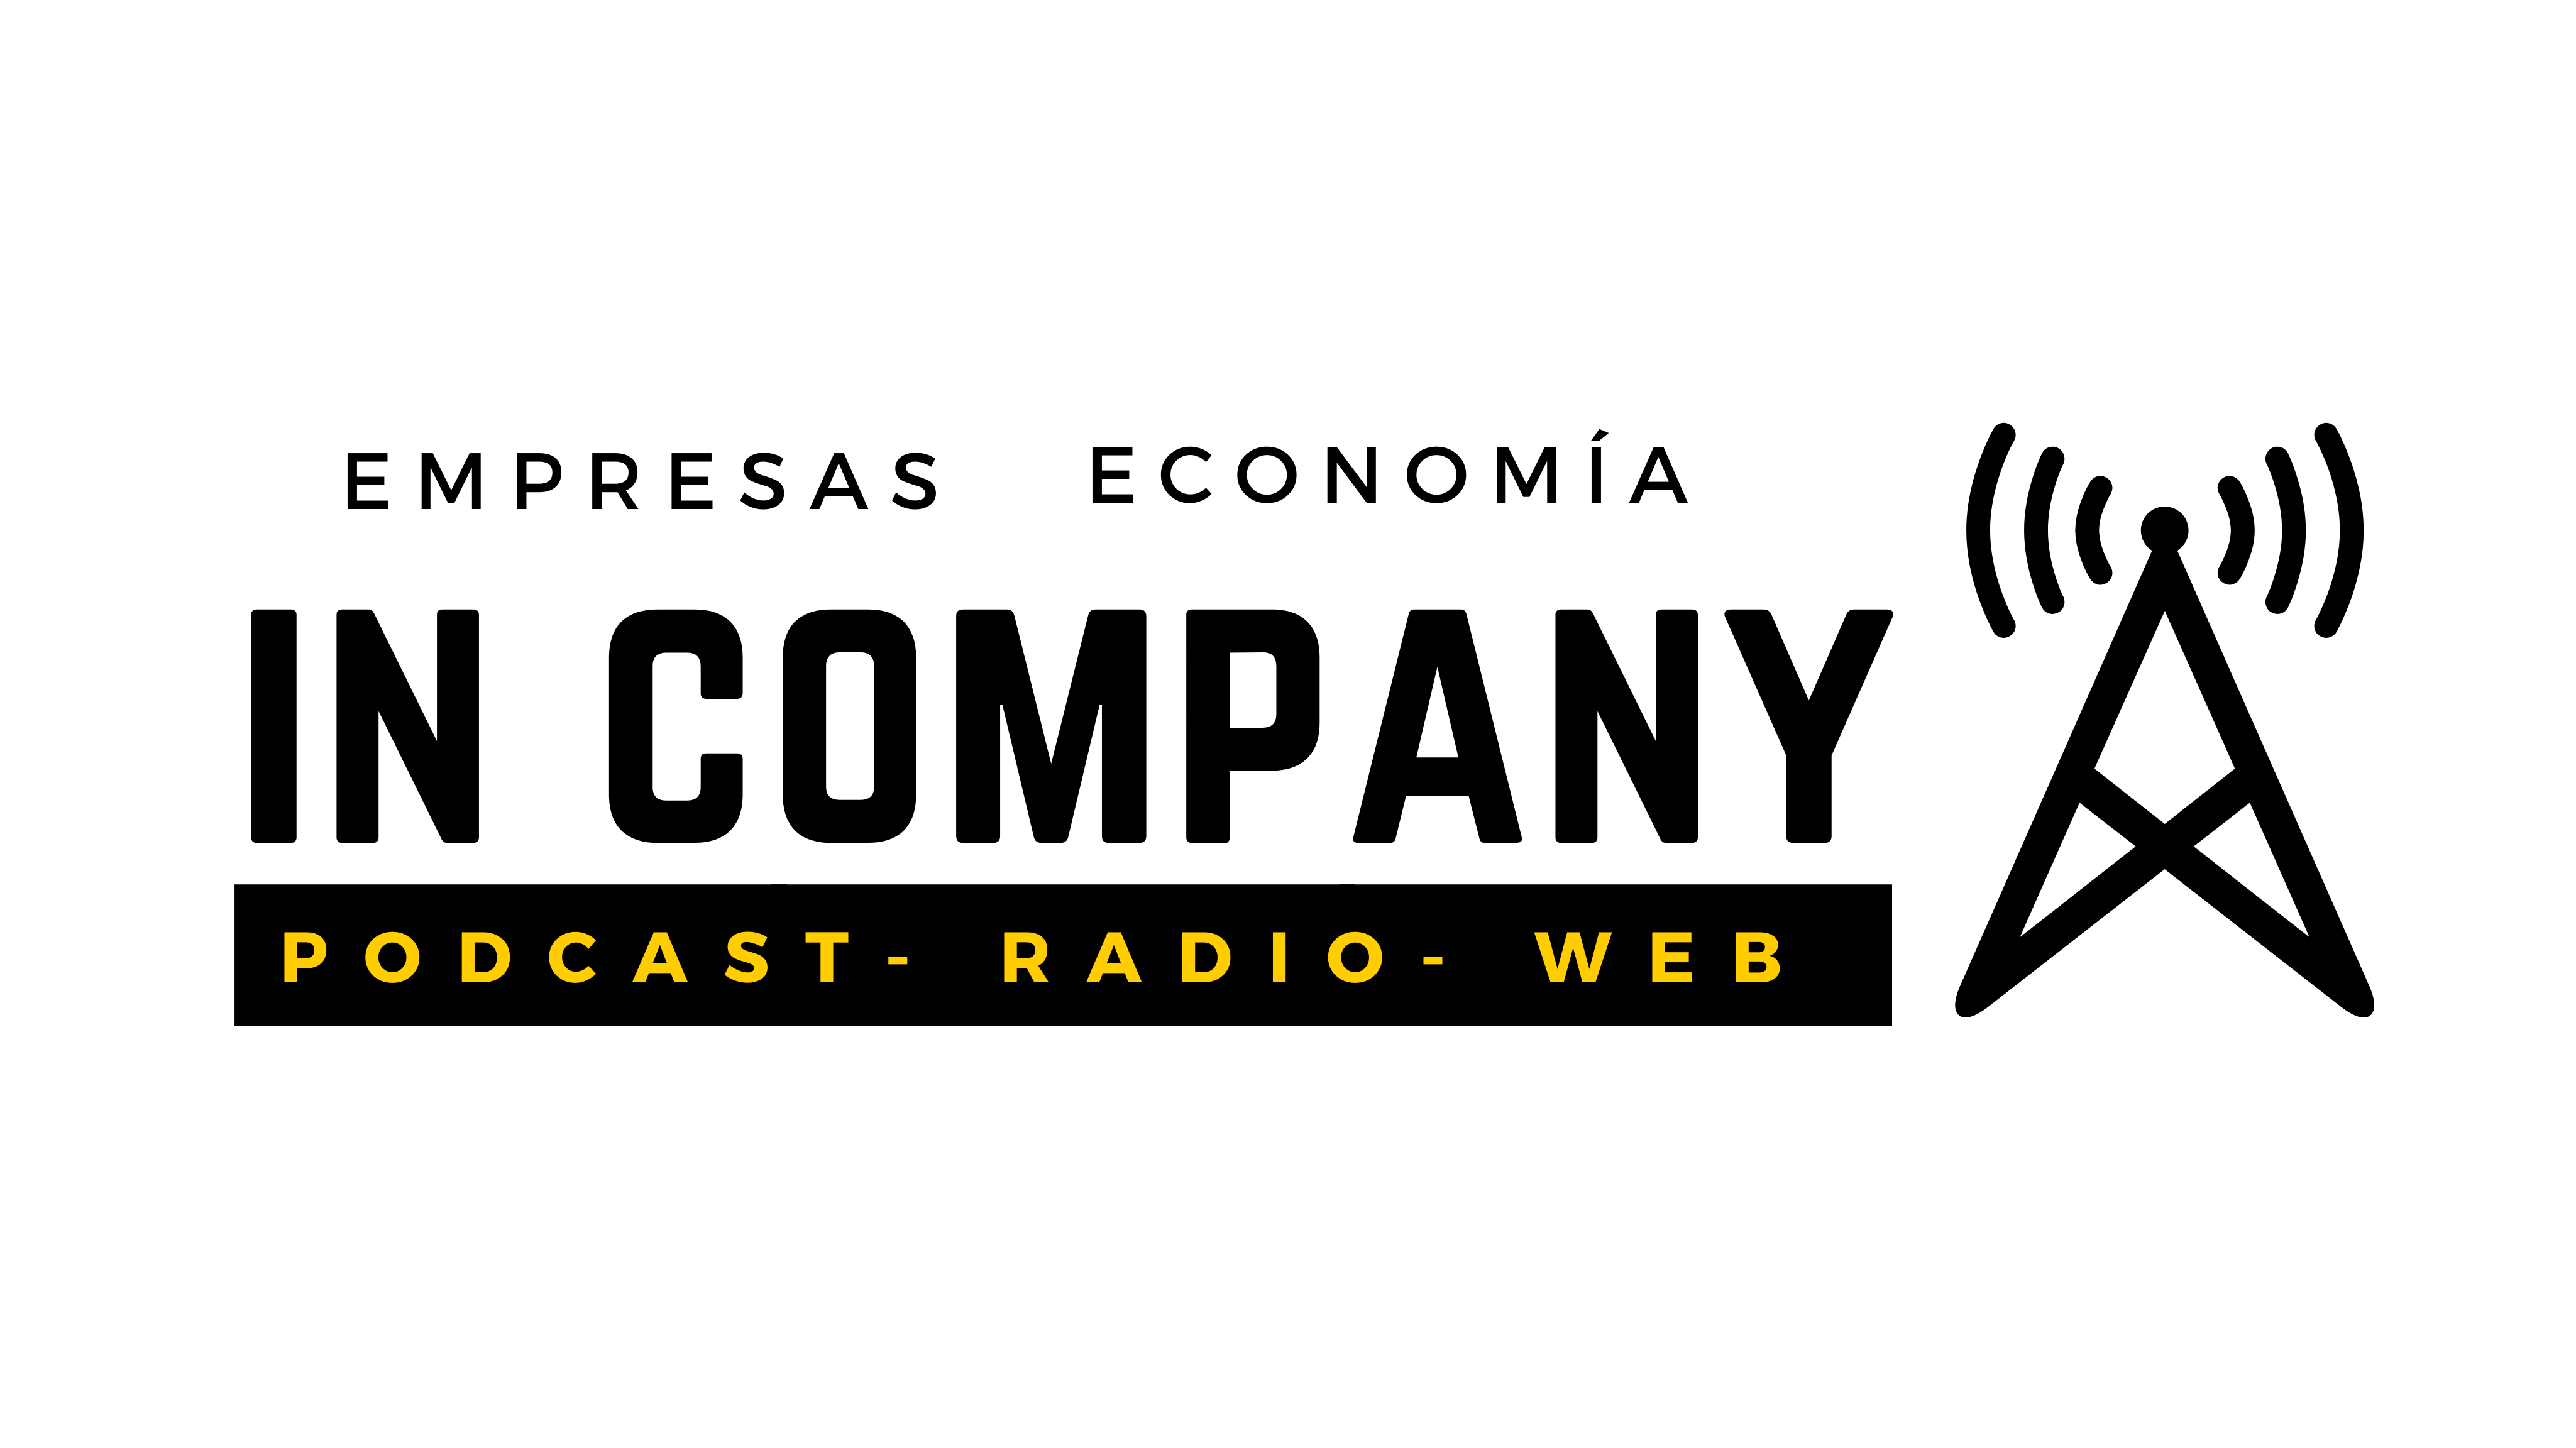 In Company Canarias tu portal de noticias sobre economía y empresas